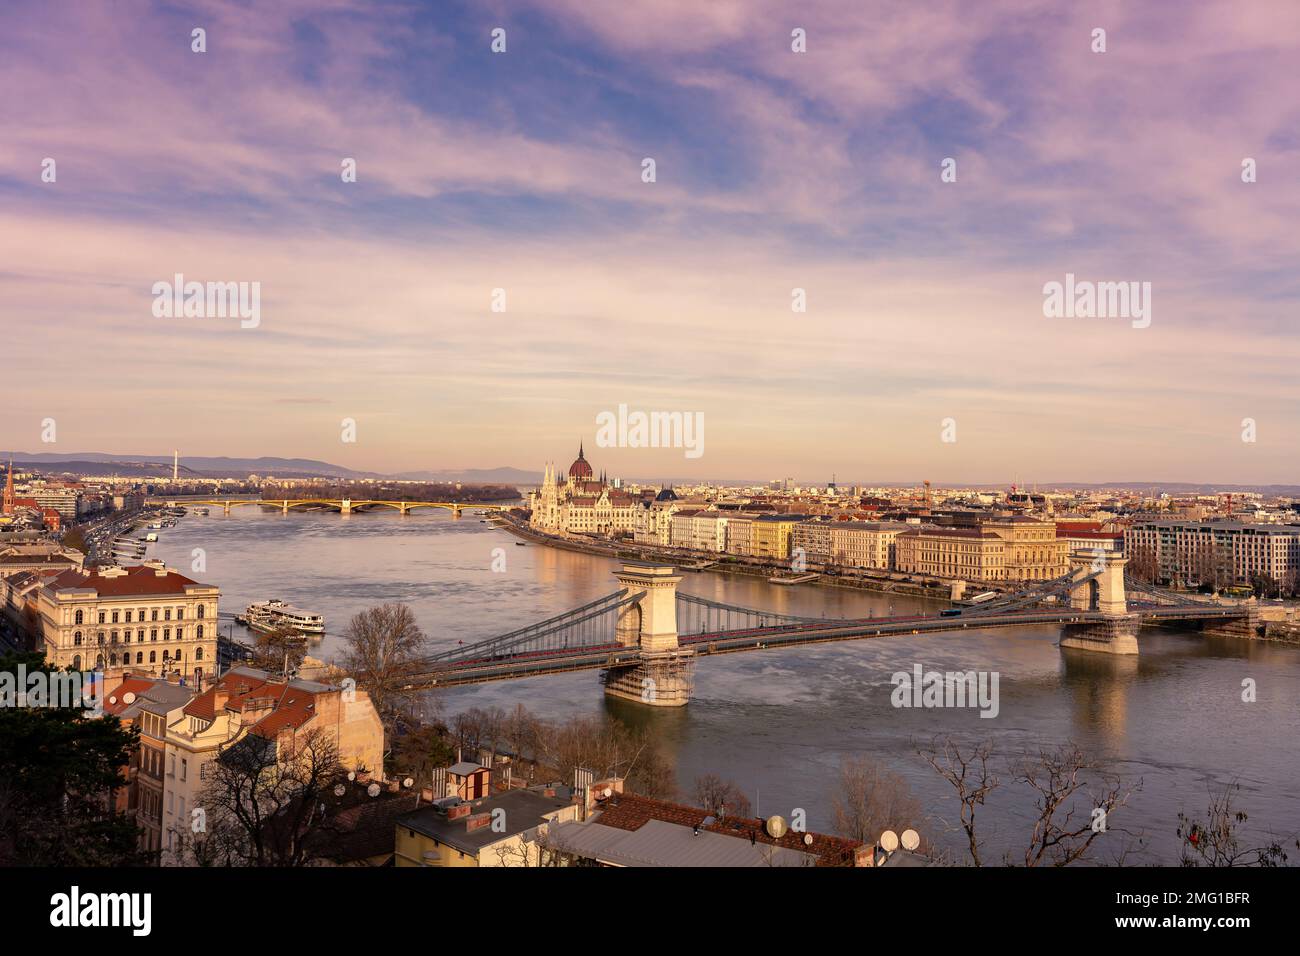 Photo panoramique sur la rive du Danube à Budapest Hongrie avec le Parlement et la chaîne pont szechenyi . Banque D'Images